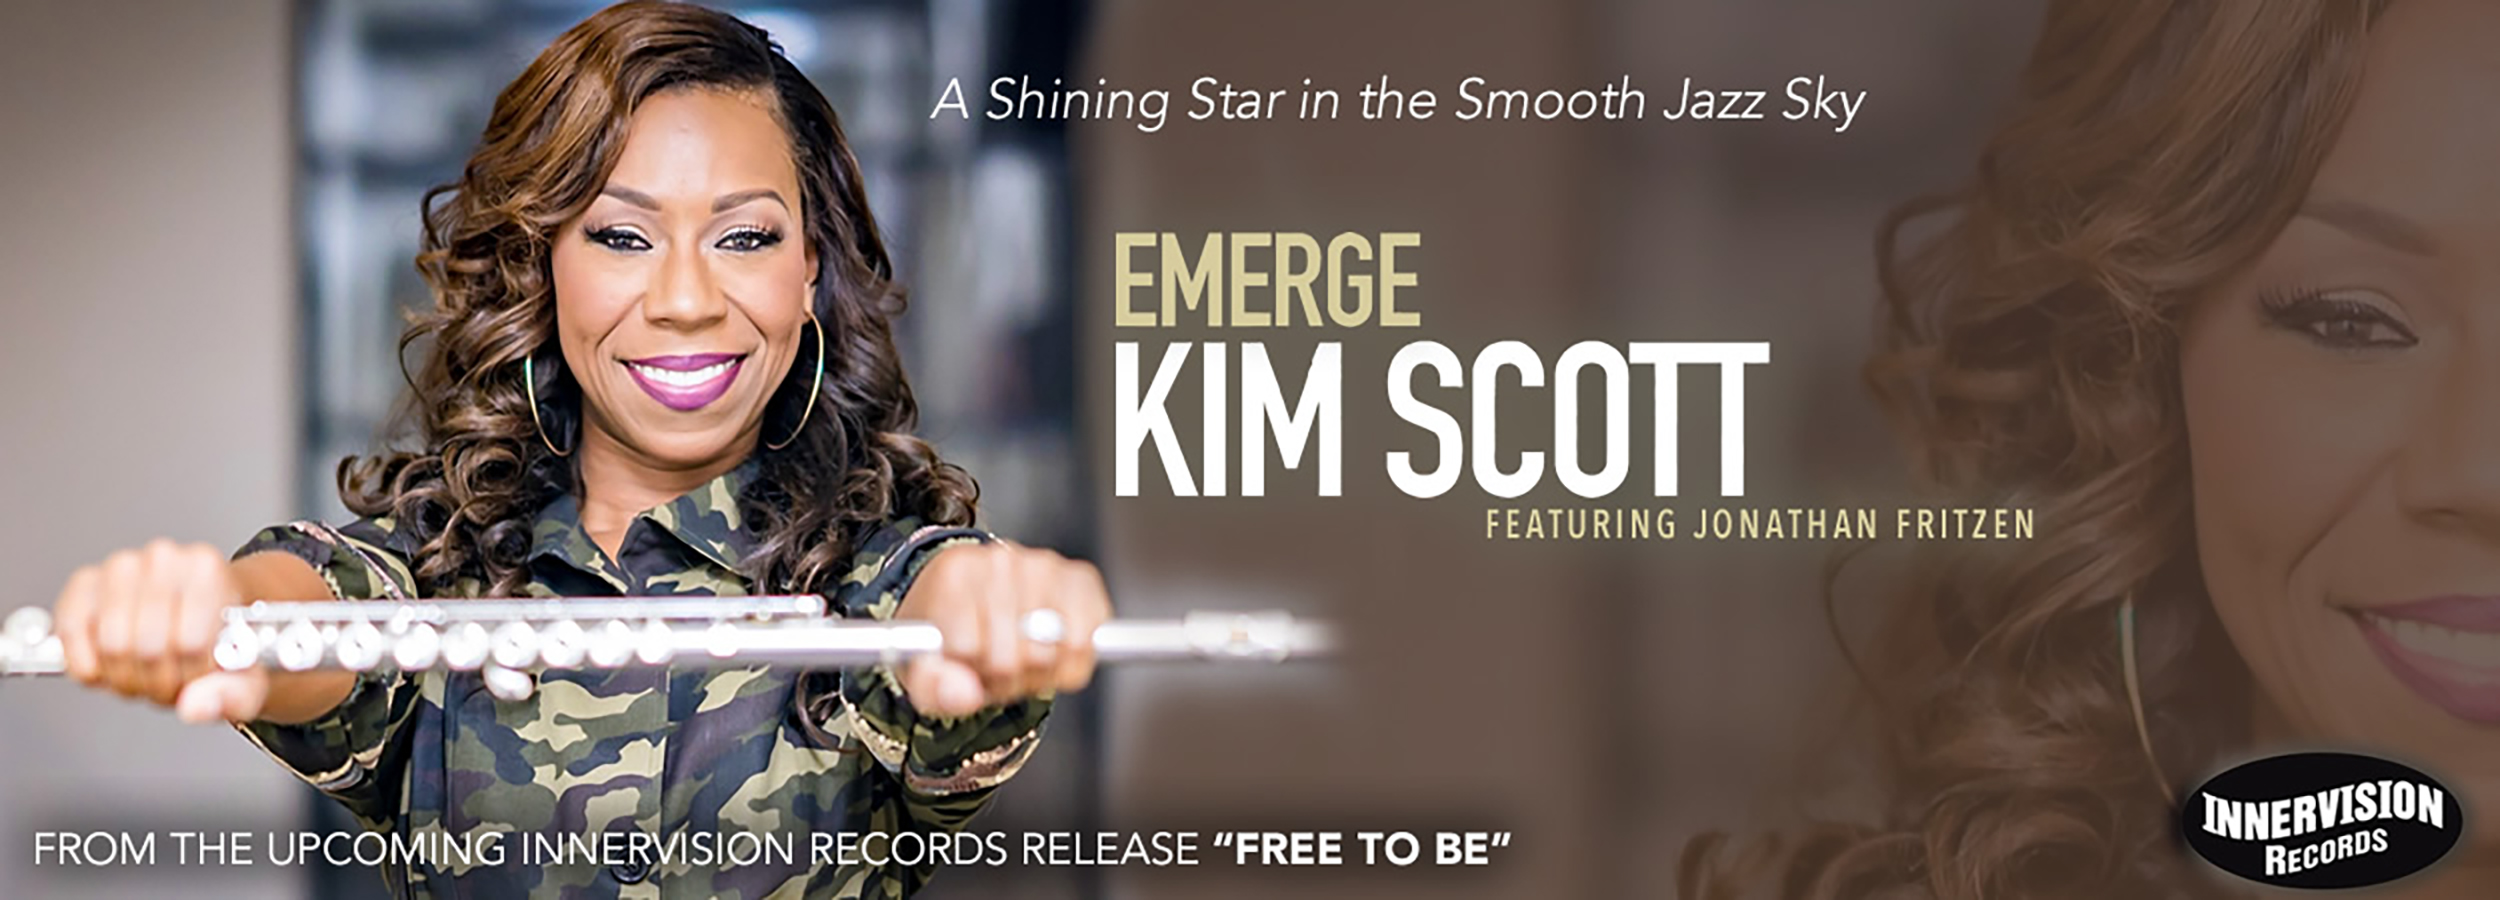 Get to know Kim Scott